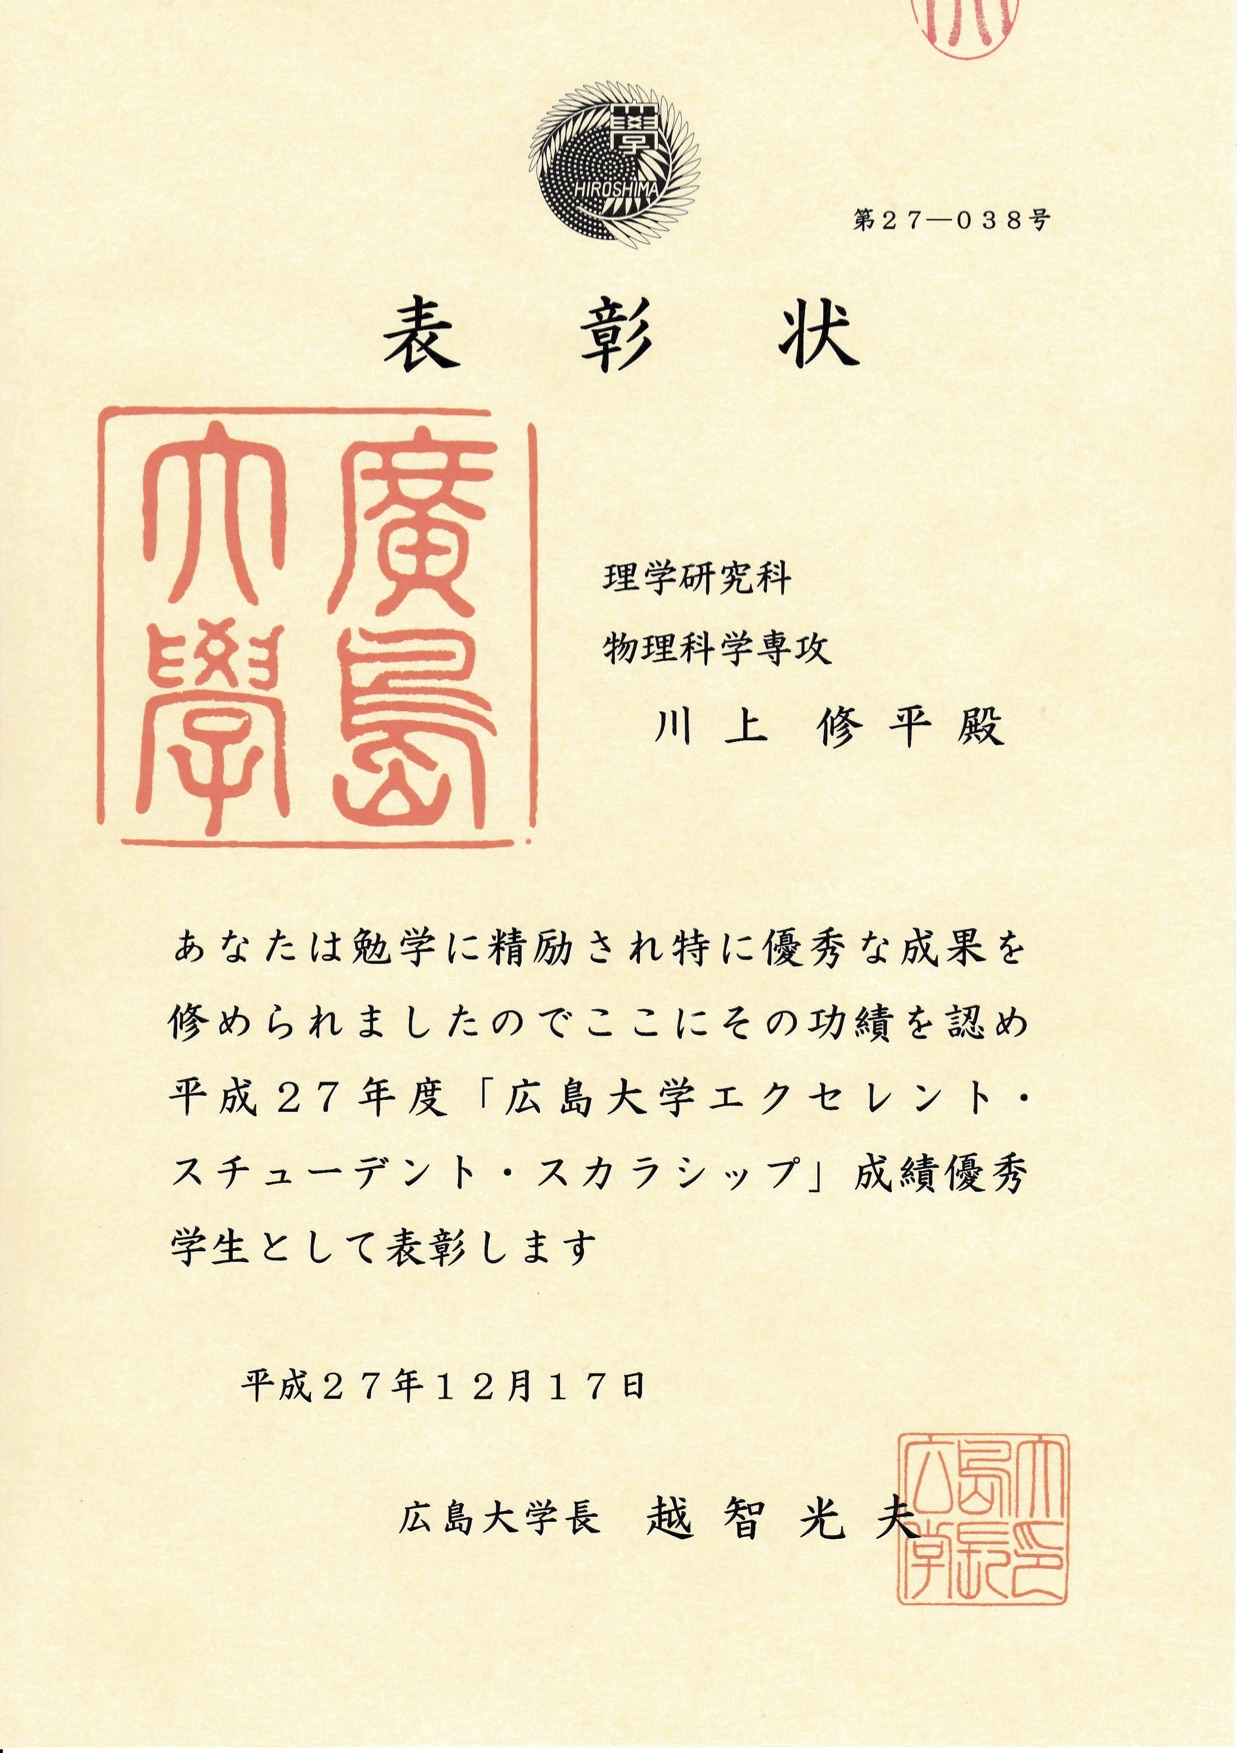 川上修平君が「広島大学エクセレント・スチューデント・スカラシップ」戌績優秀学生として表彰されました！ （2015/12/27）